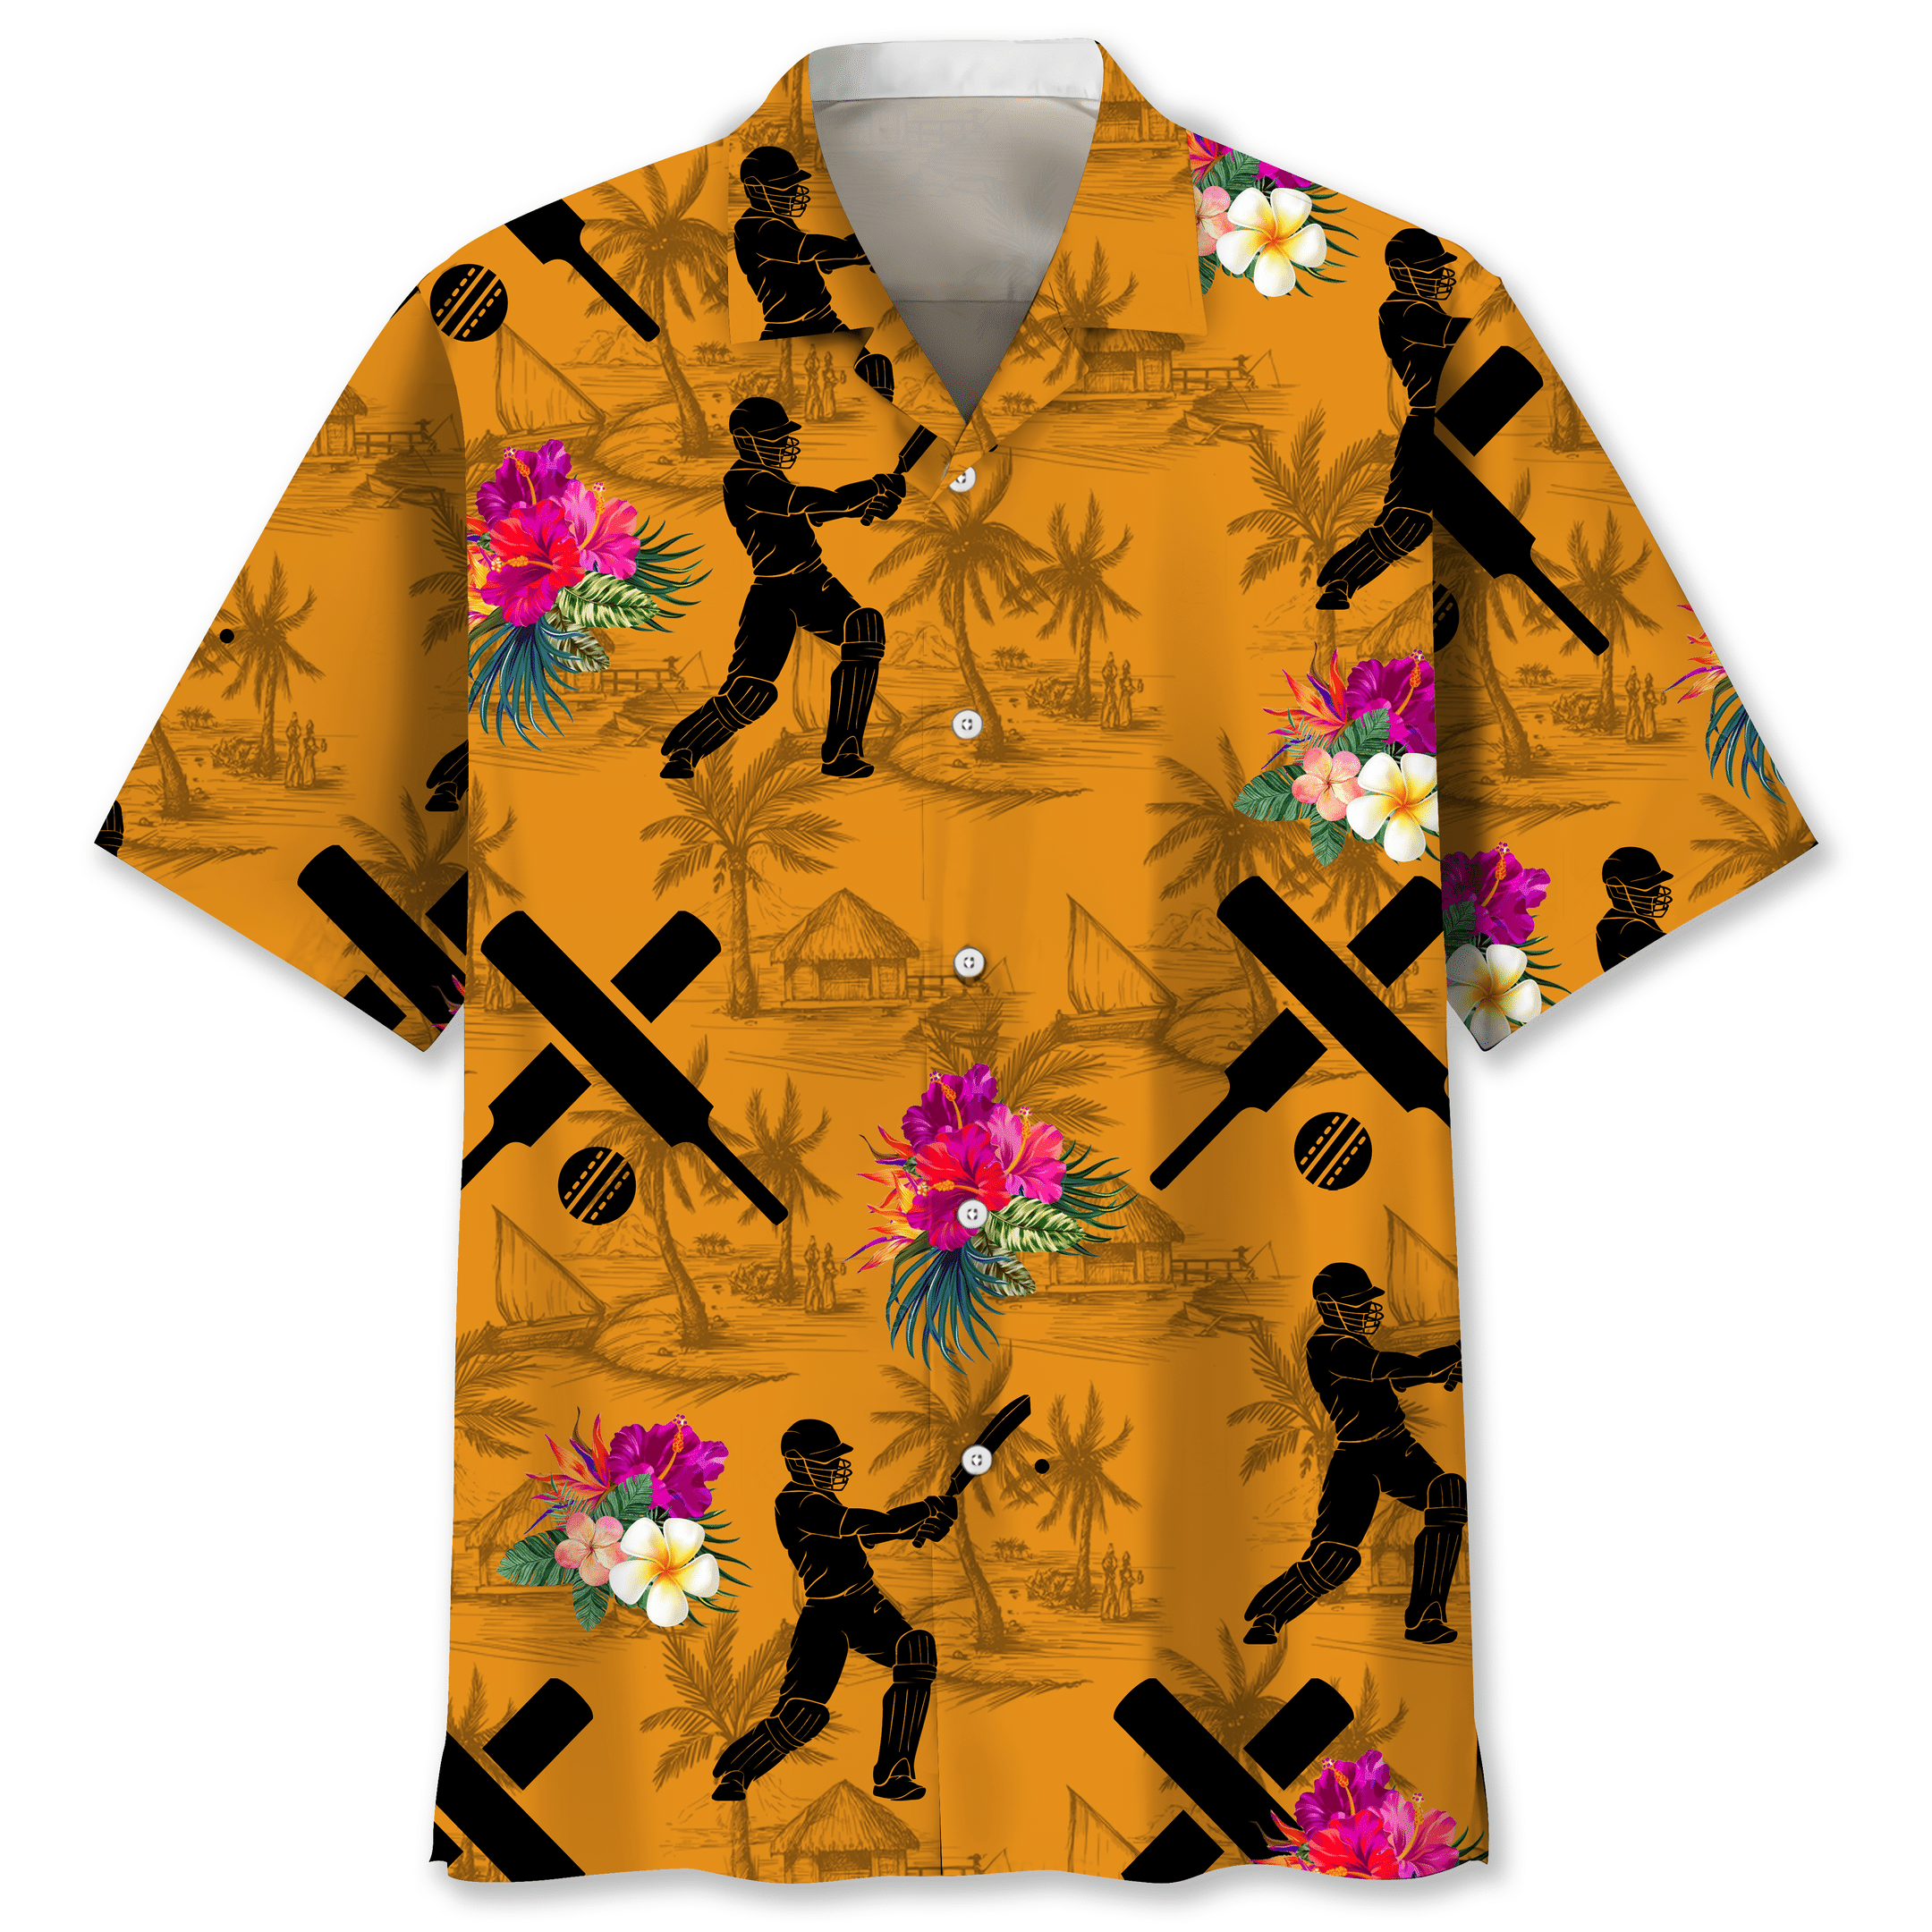 NEW Cricket Orange Tropical Hawaiian Shirt